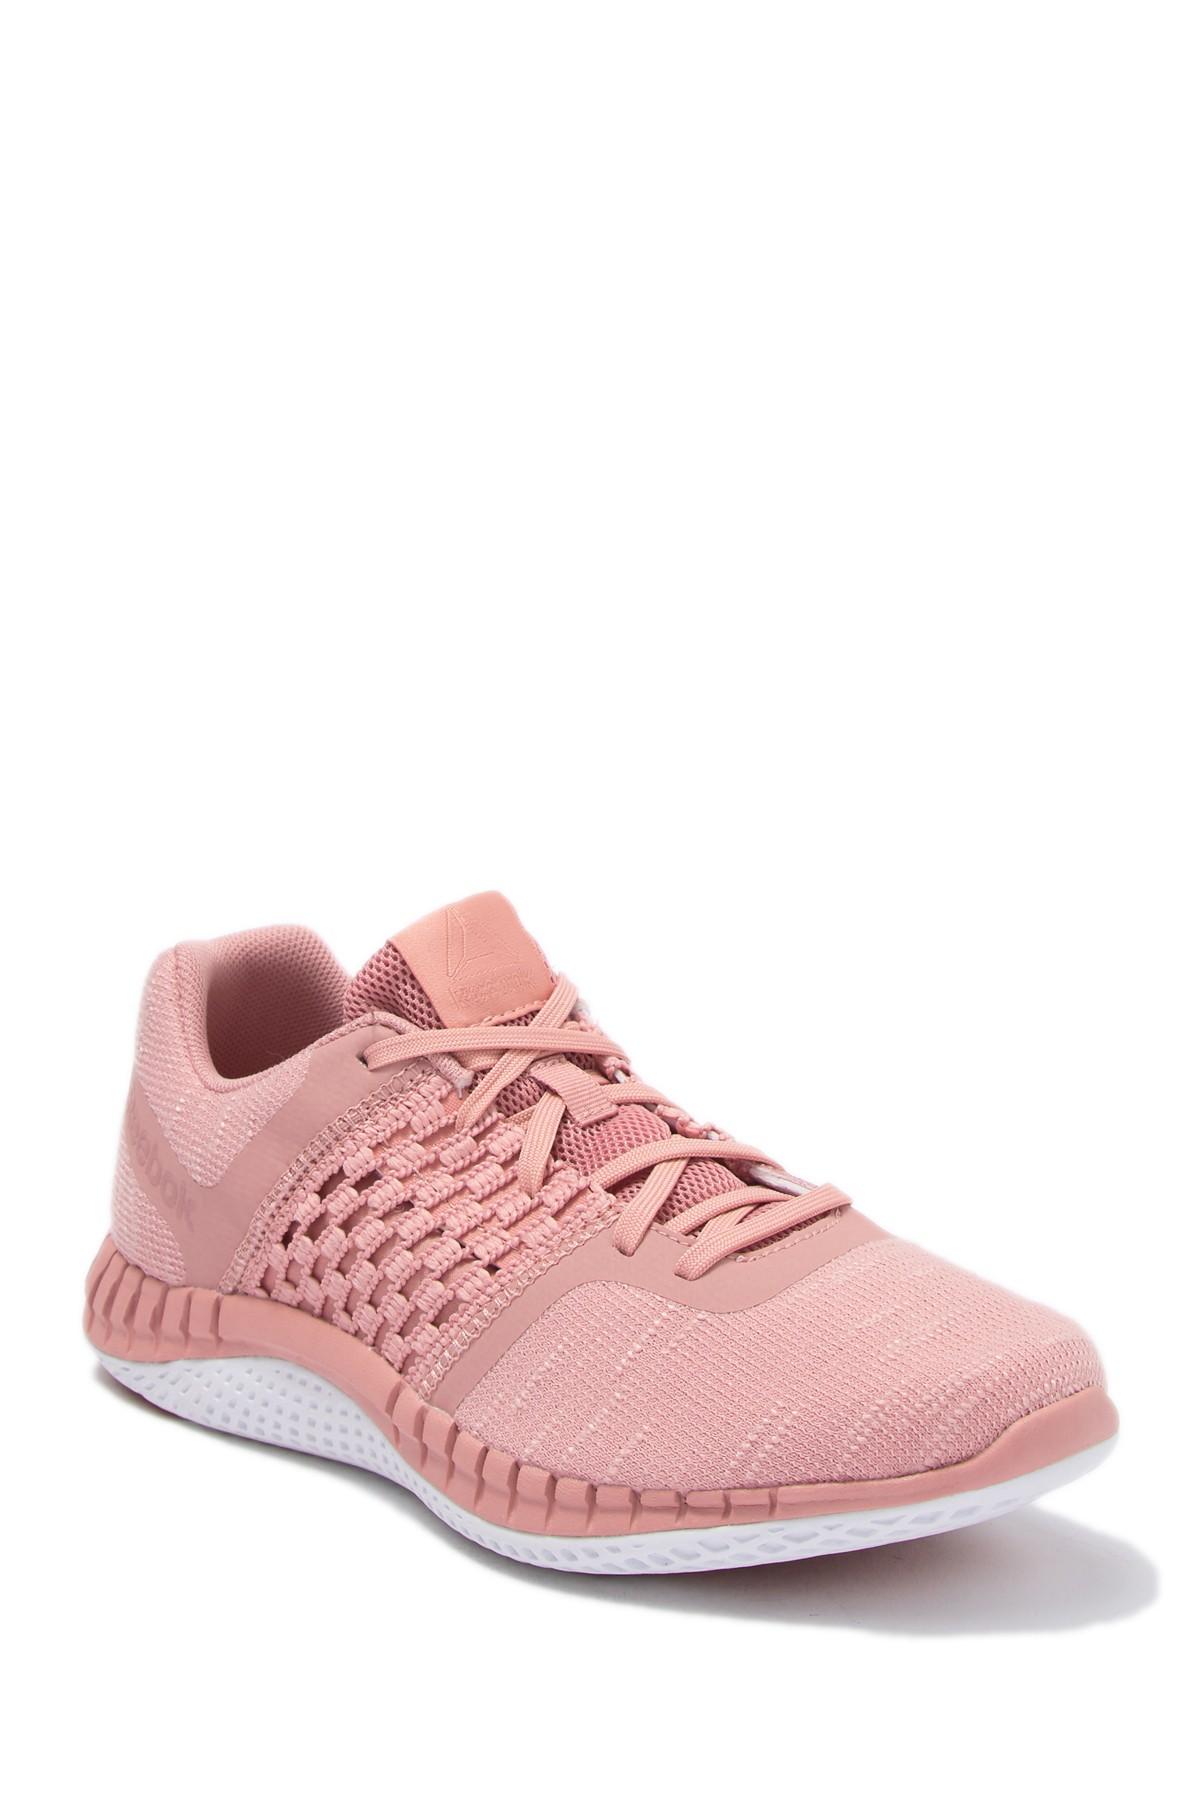 Reebok Rubber Print Run Dist Sneaker in Pink - Lyst